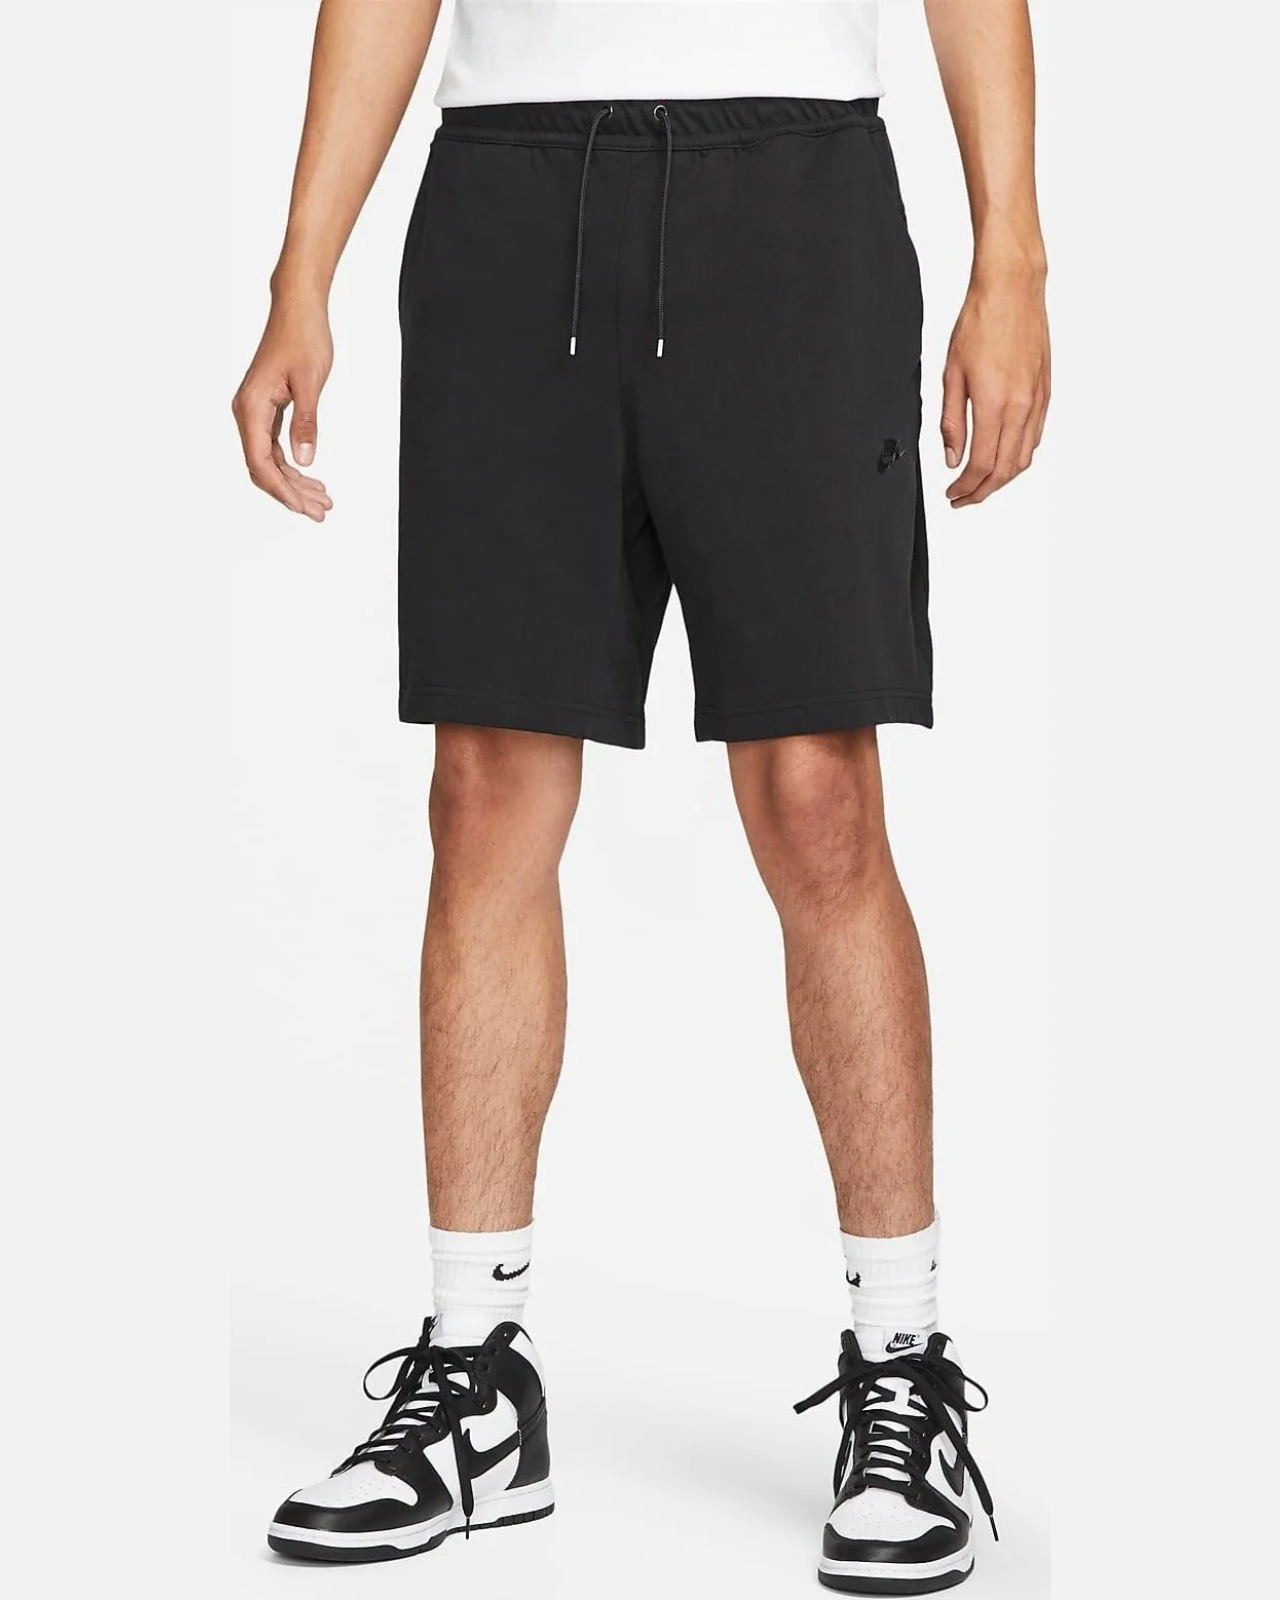 Спортивные шорты мужские Nike Knit Ltwt Short, DM6589-010, размер M